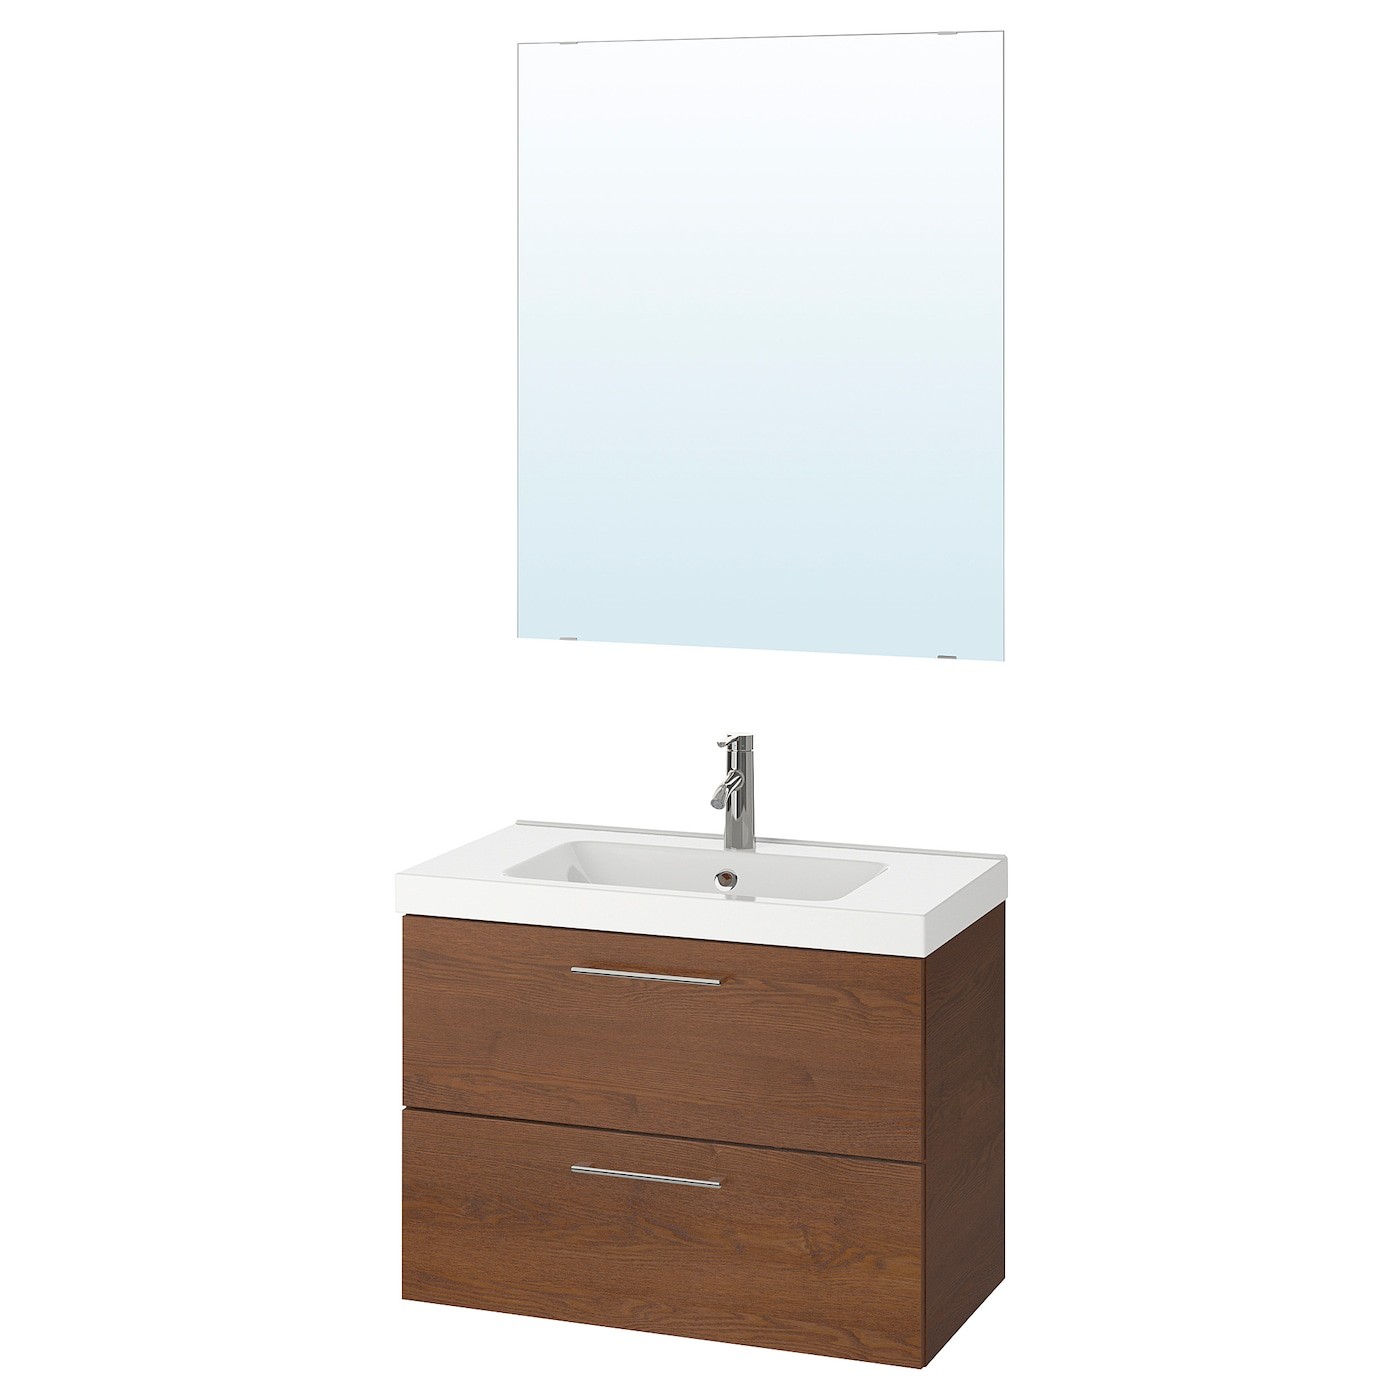 GODMORGON / ODENSVIK Bathroom furniture, set of 4